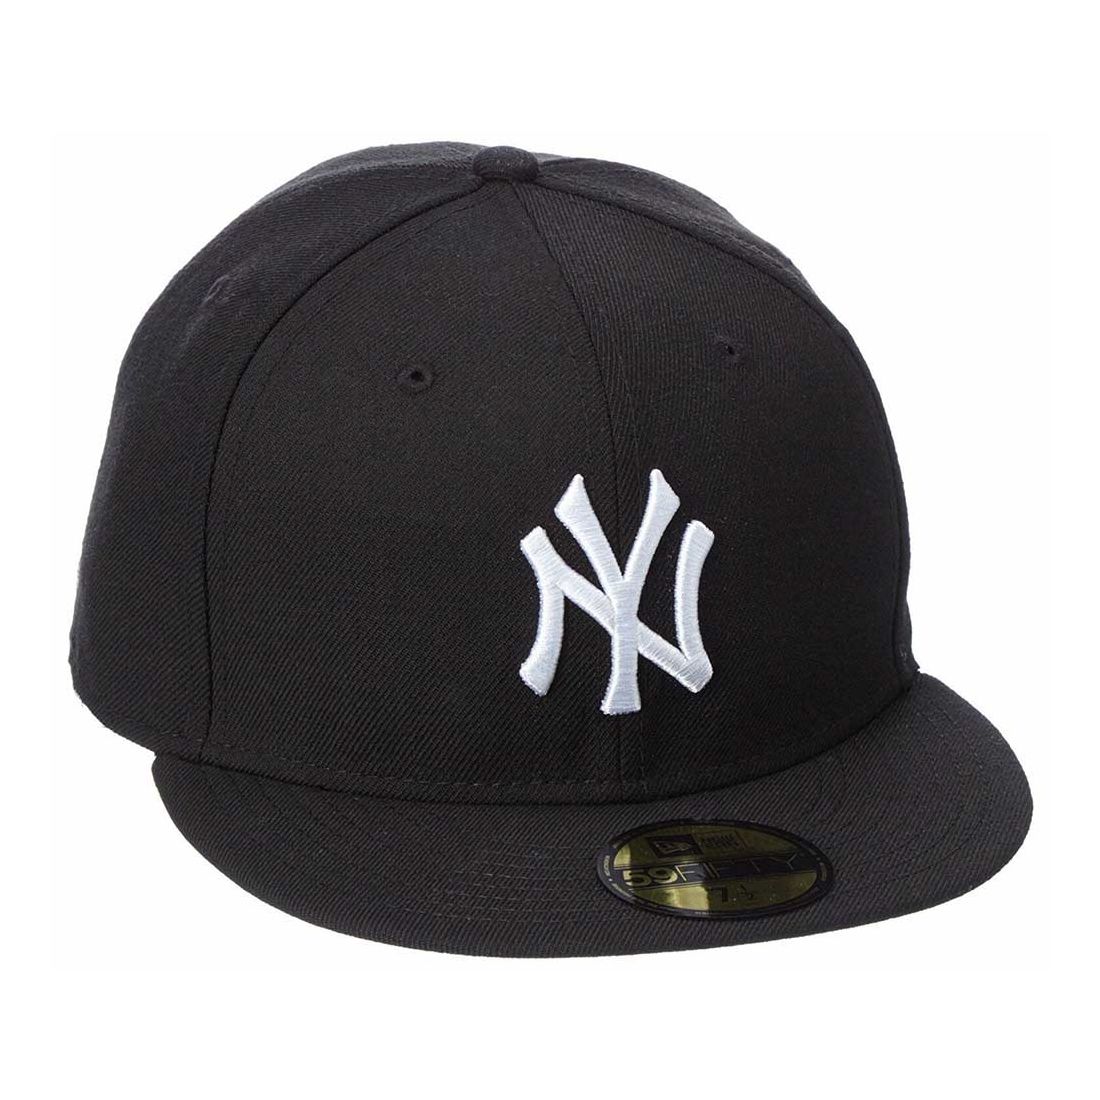 قبعة نيو إيرا (أم أل بي) ليج باسيك نيويورك ينكي أزرق بحري للرجال كبير / (اكس أل)